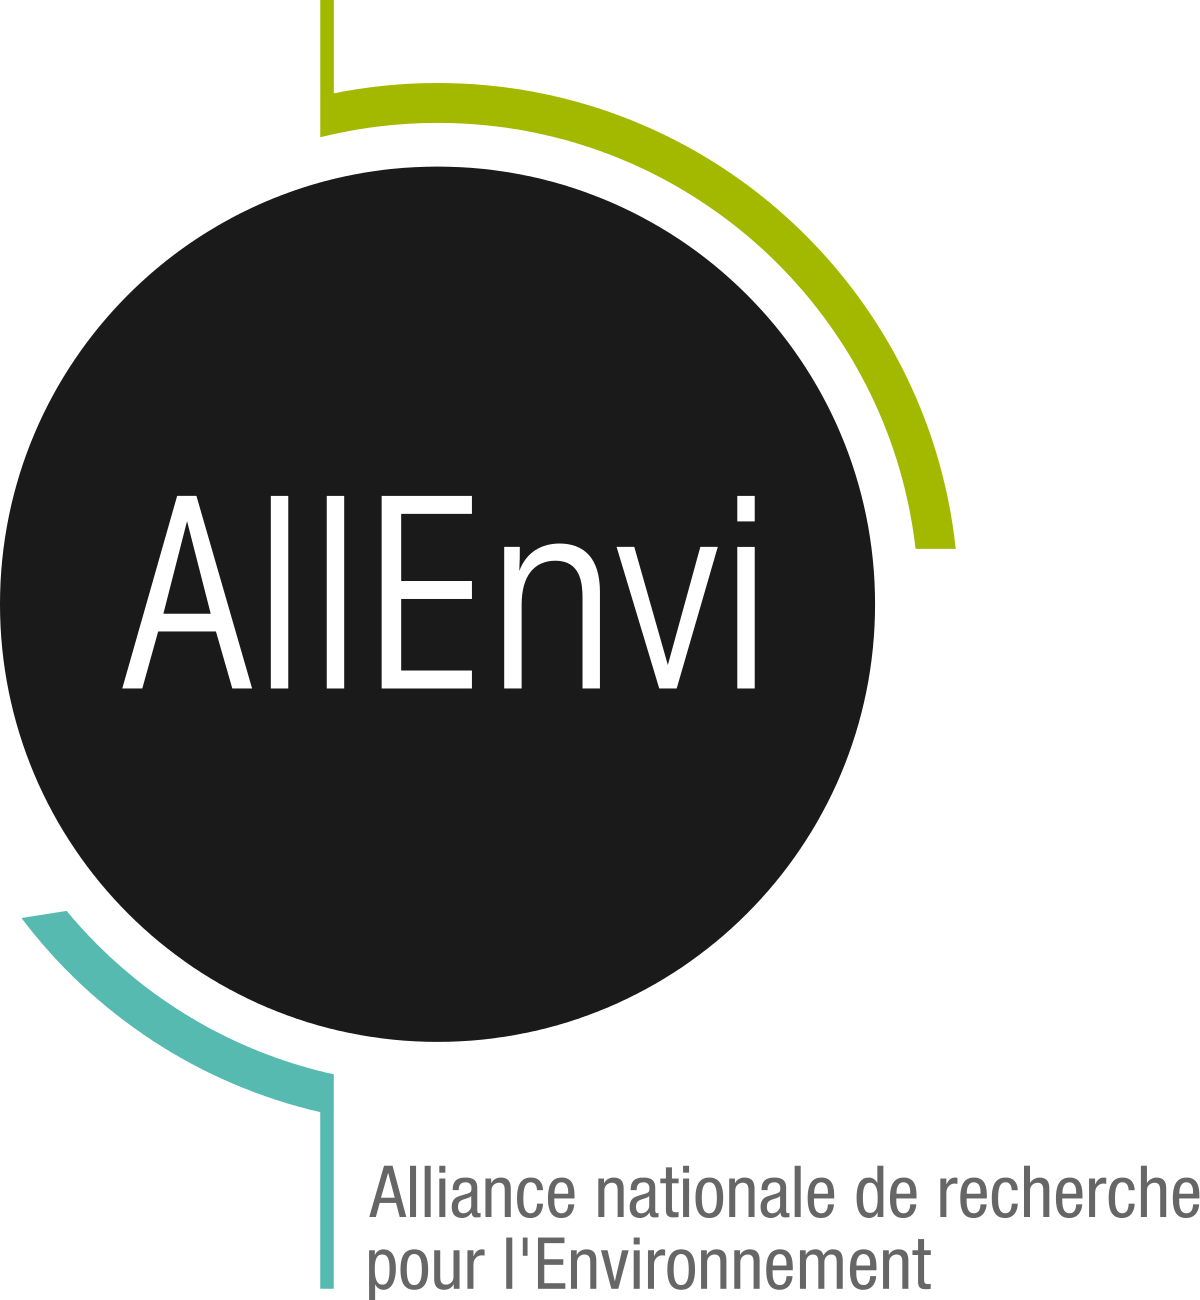 Alliance_nationale_de_recherche_pour_l'environnement_(logo).svg.png